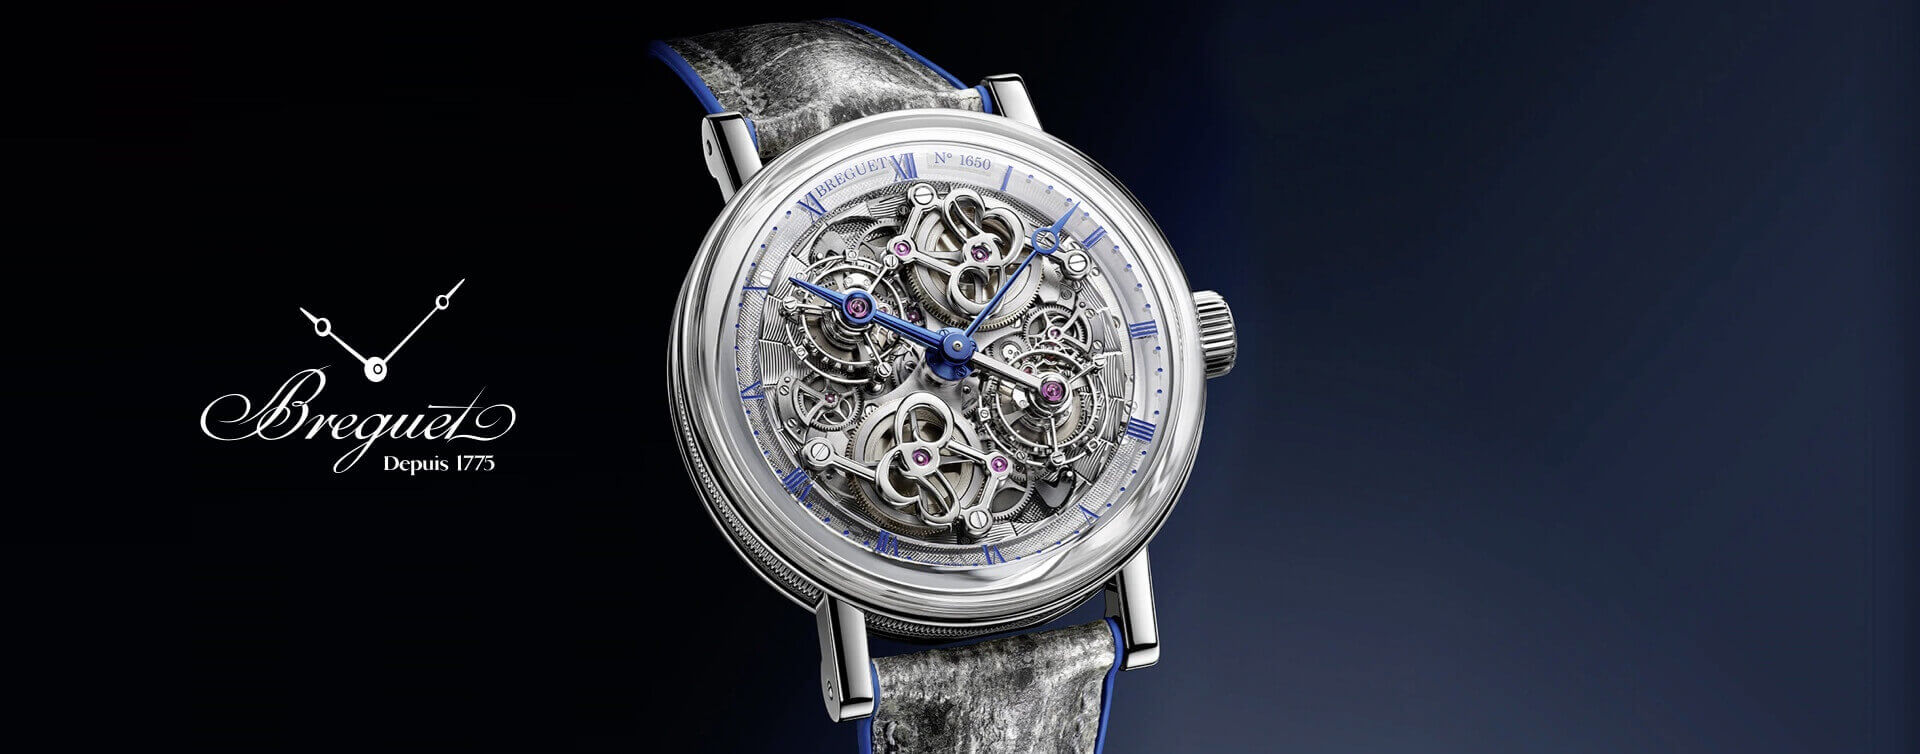 Breguet 5345PT Double Tourbillon Platinum wrist watch